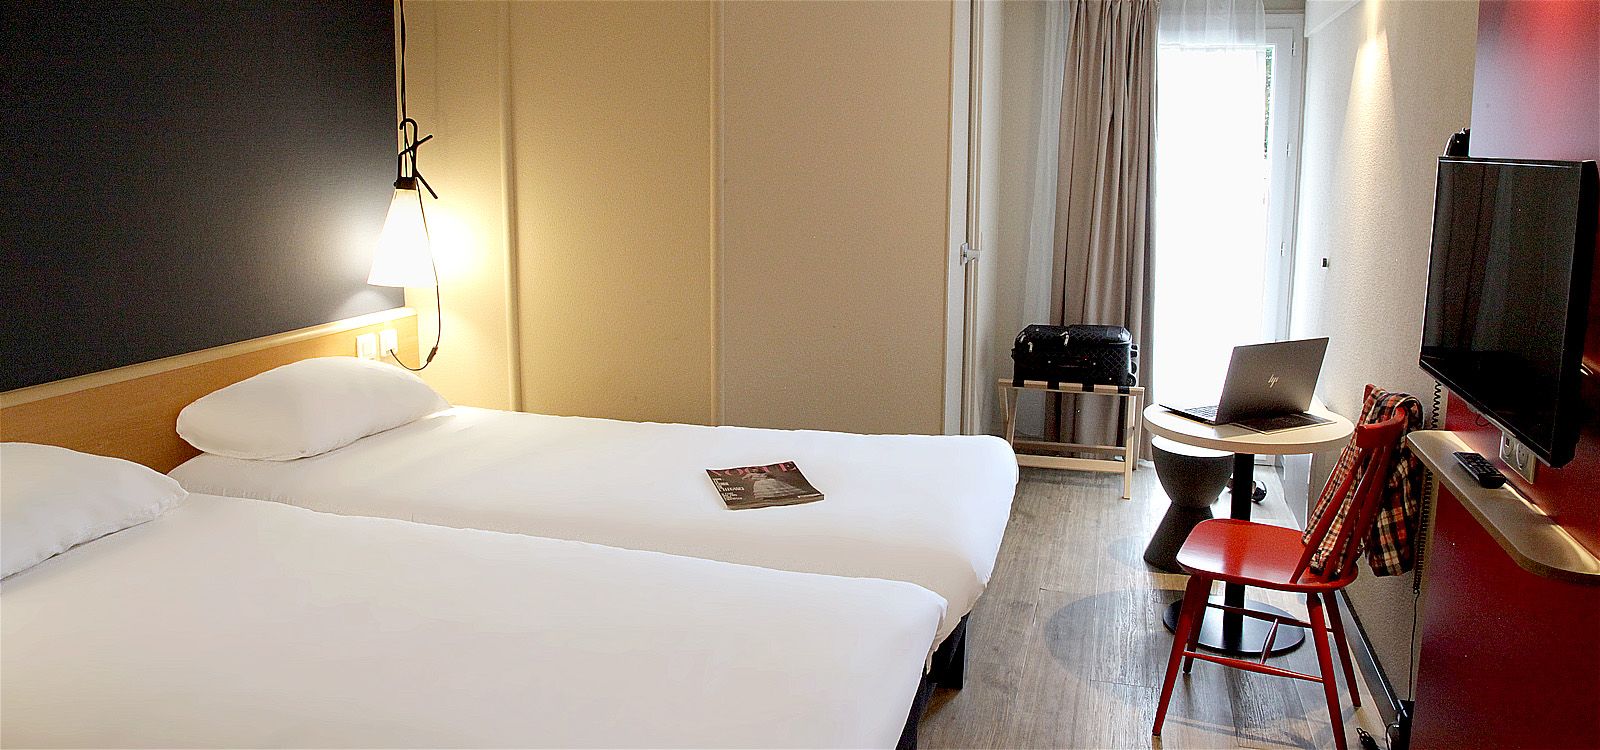 Chambre twin hôtel Ibis Brest avec 2 lits simples